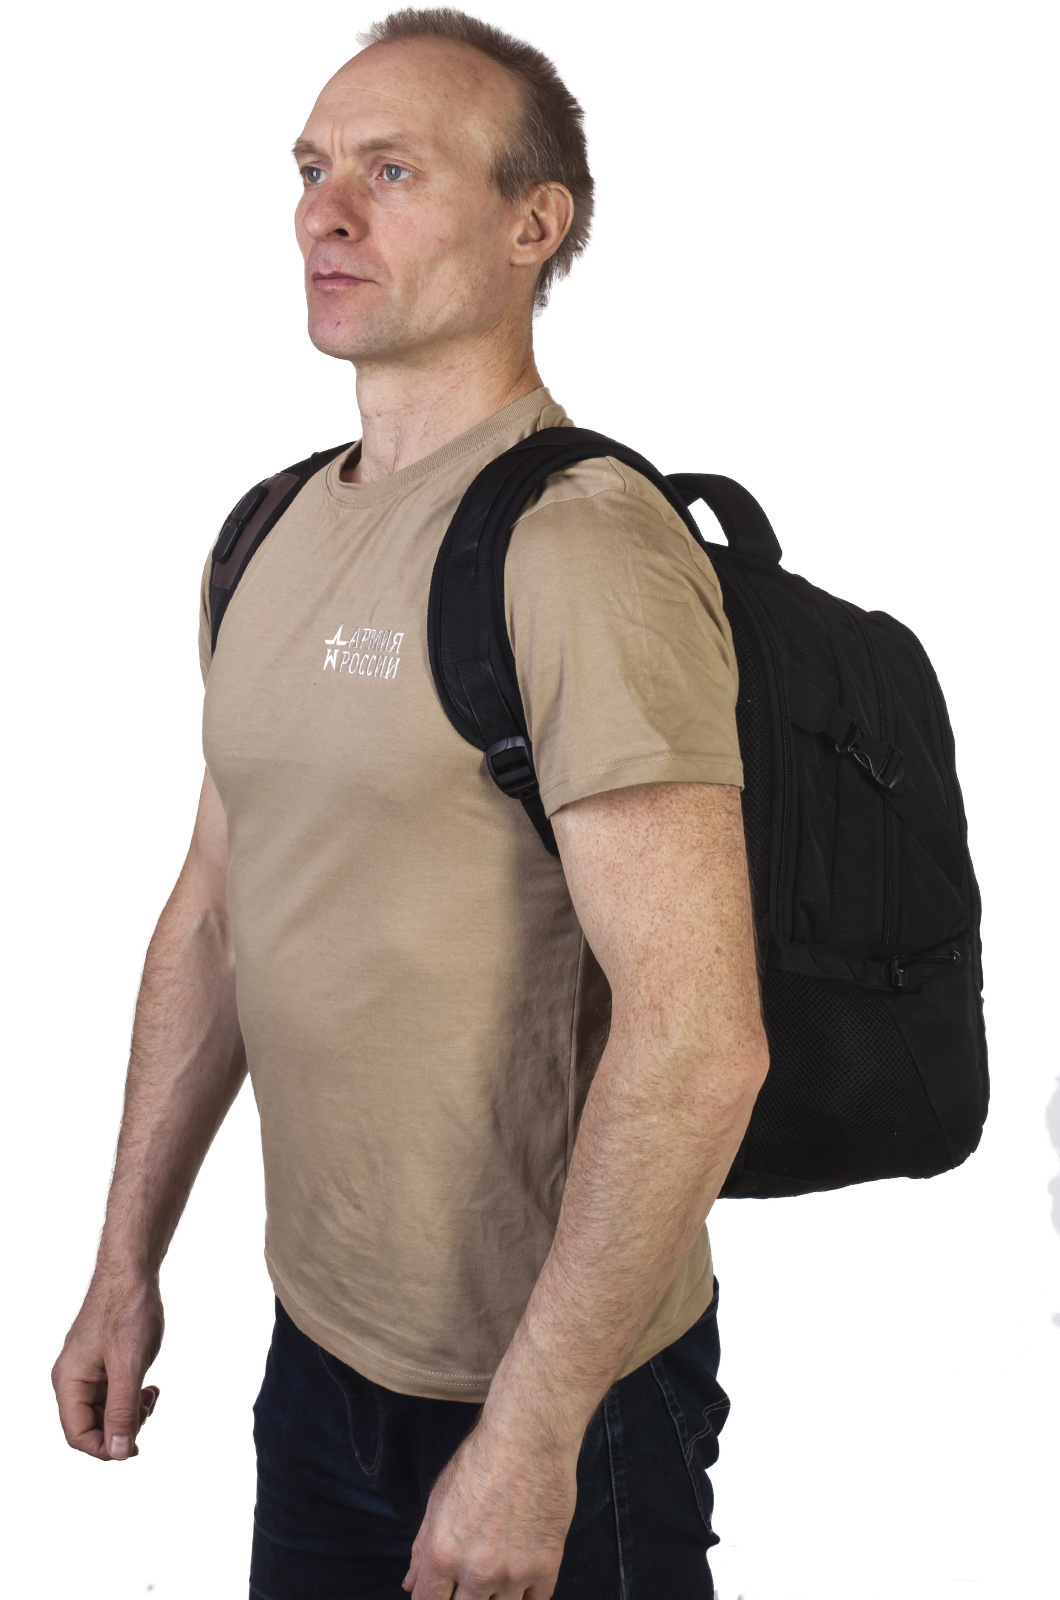 Мужской надежный рюкзак с нашивкой Охотничьи Войска (29 л) 